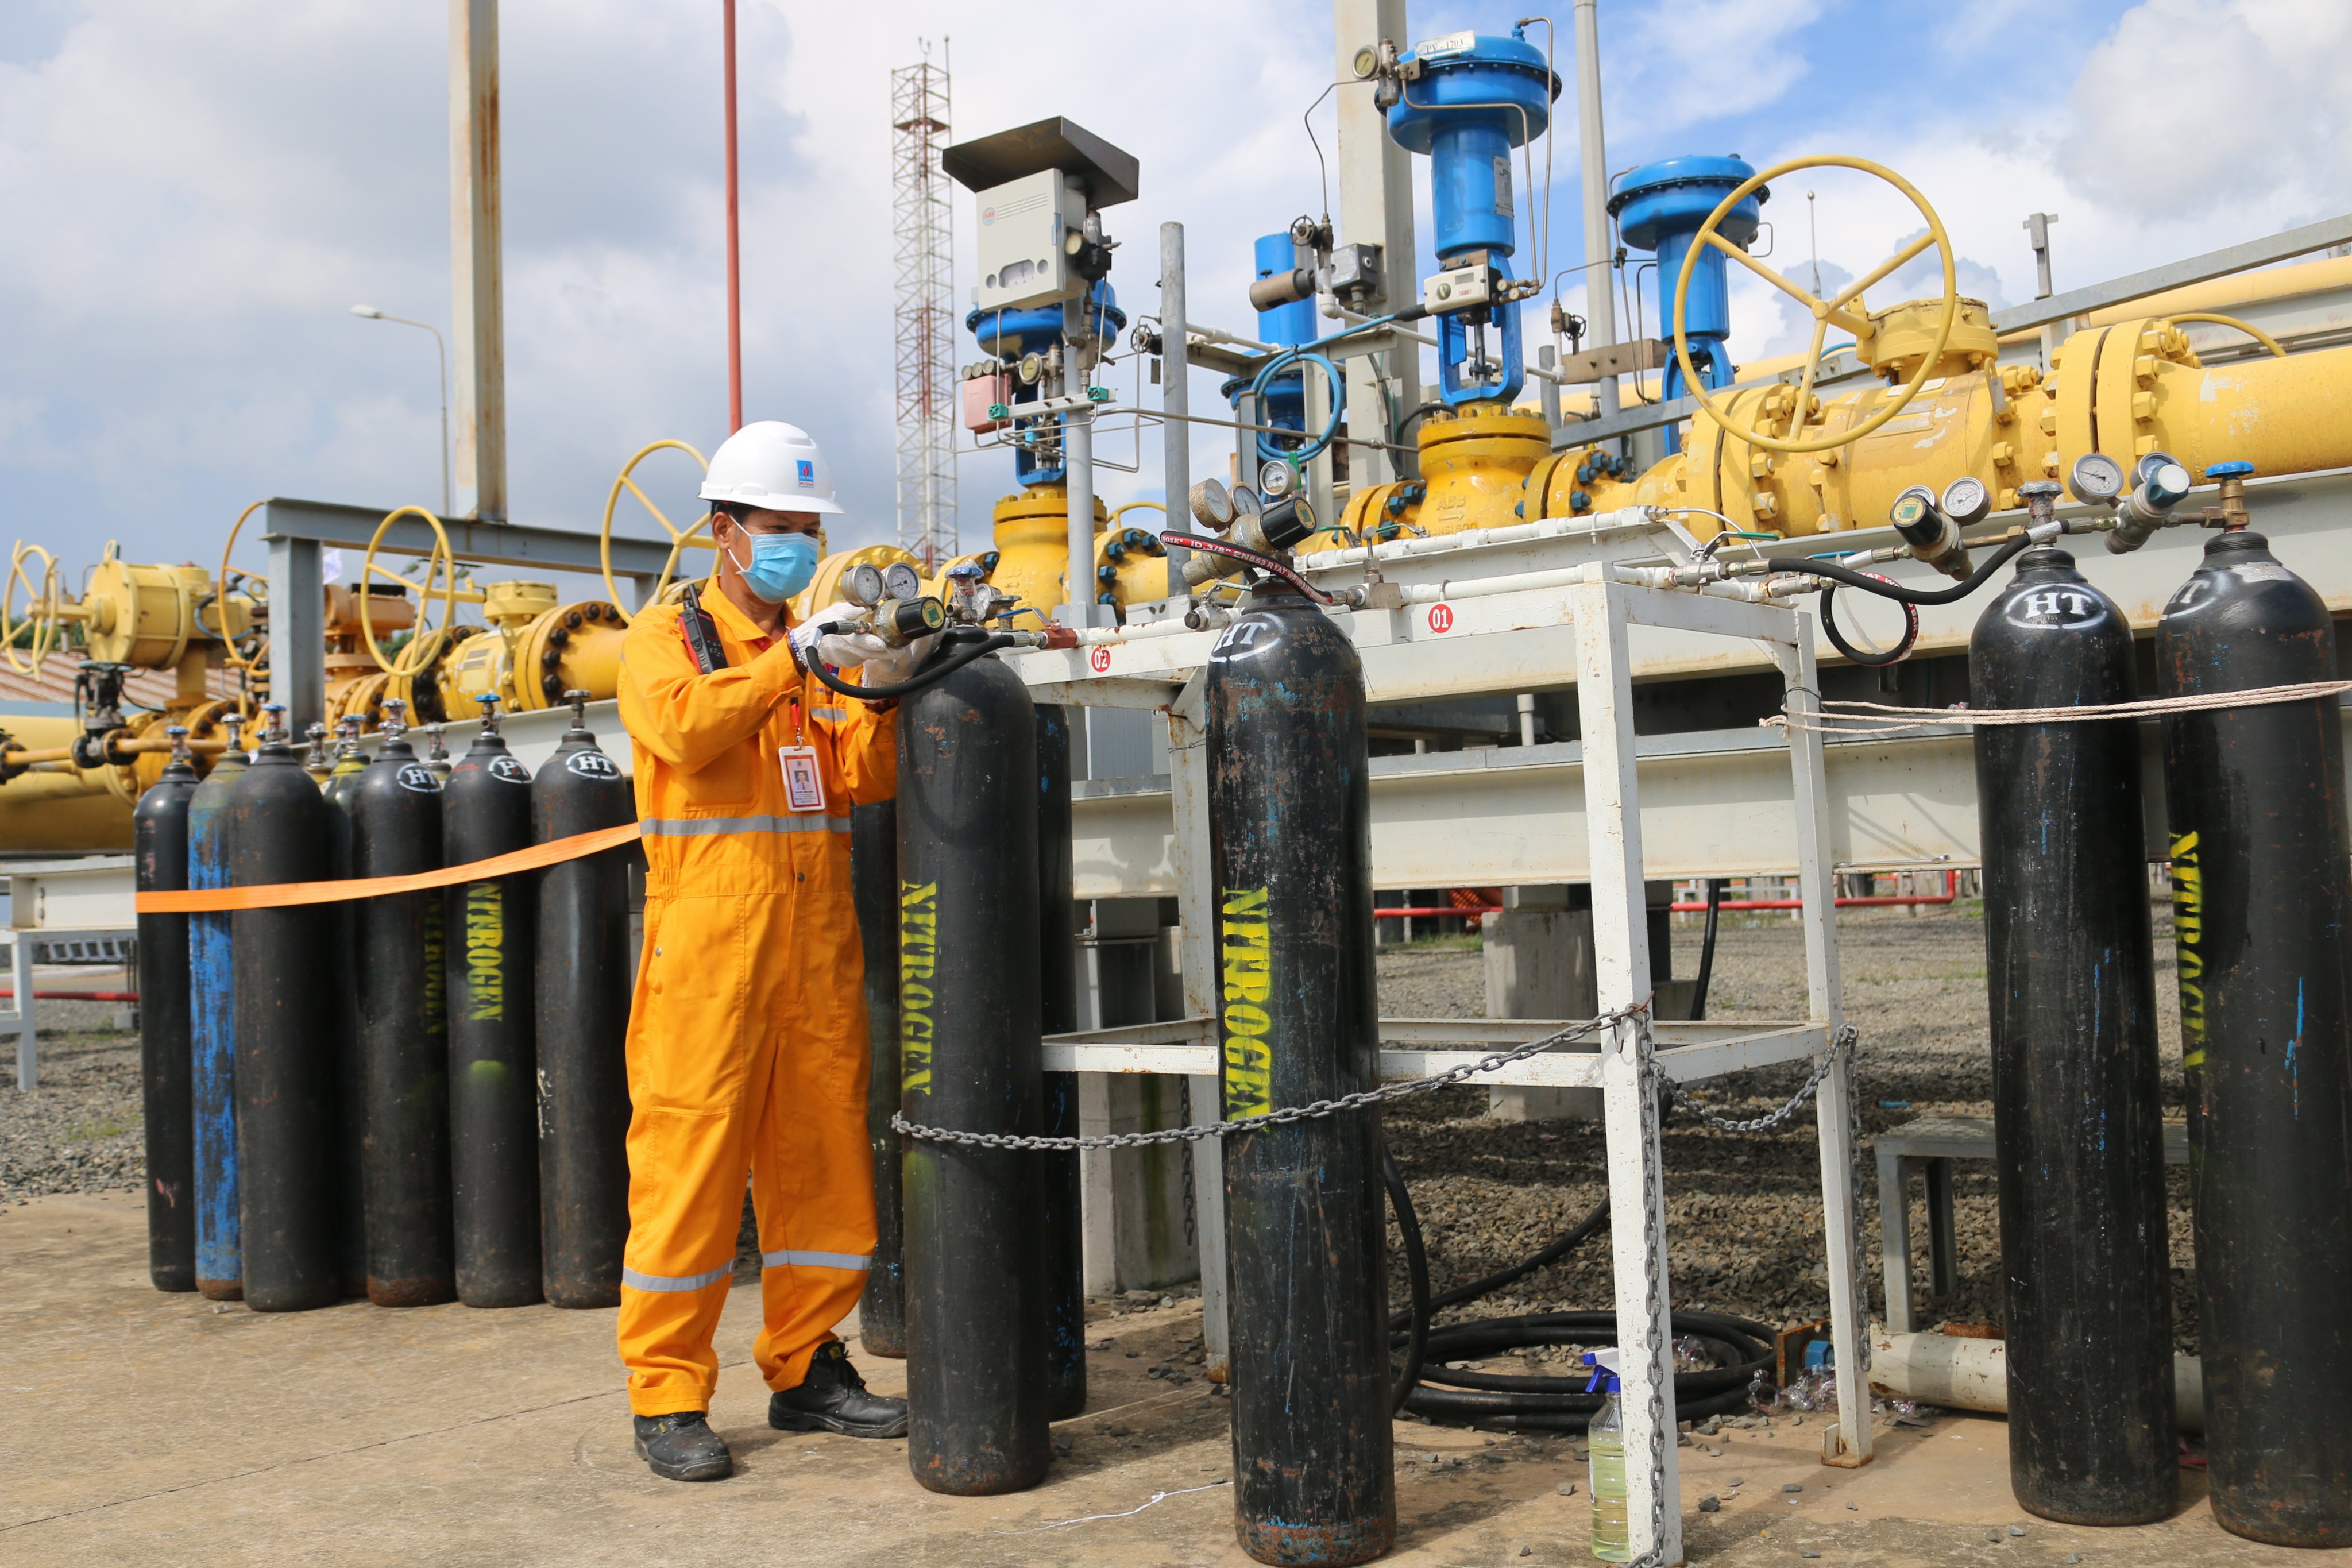 Tổng Công ty Khí Việt Nam (PV Gas) là một trong những đơn vị chia cổ tức cao với tỷ lệ 30% vốn điều lệ.Trong ảnh: Người lao động PV GAS tham gia hoàn thành bảo dưỡng sửa chữa hệ thống khí.